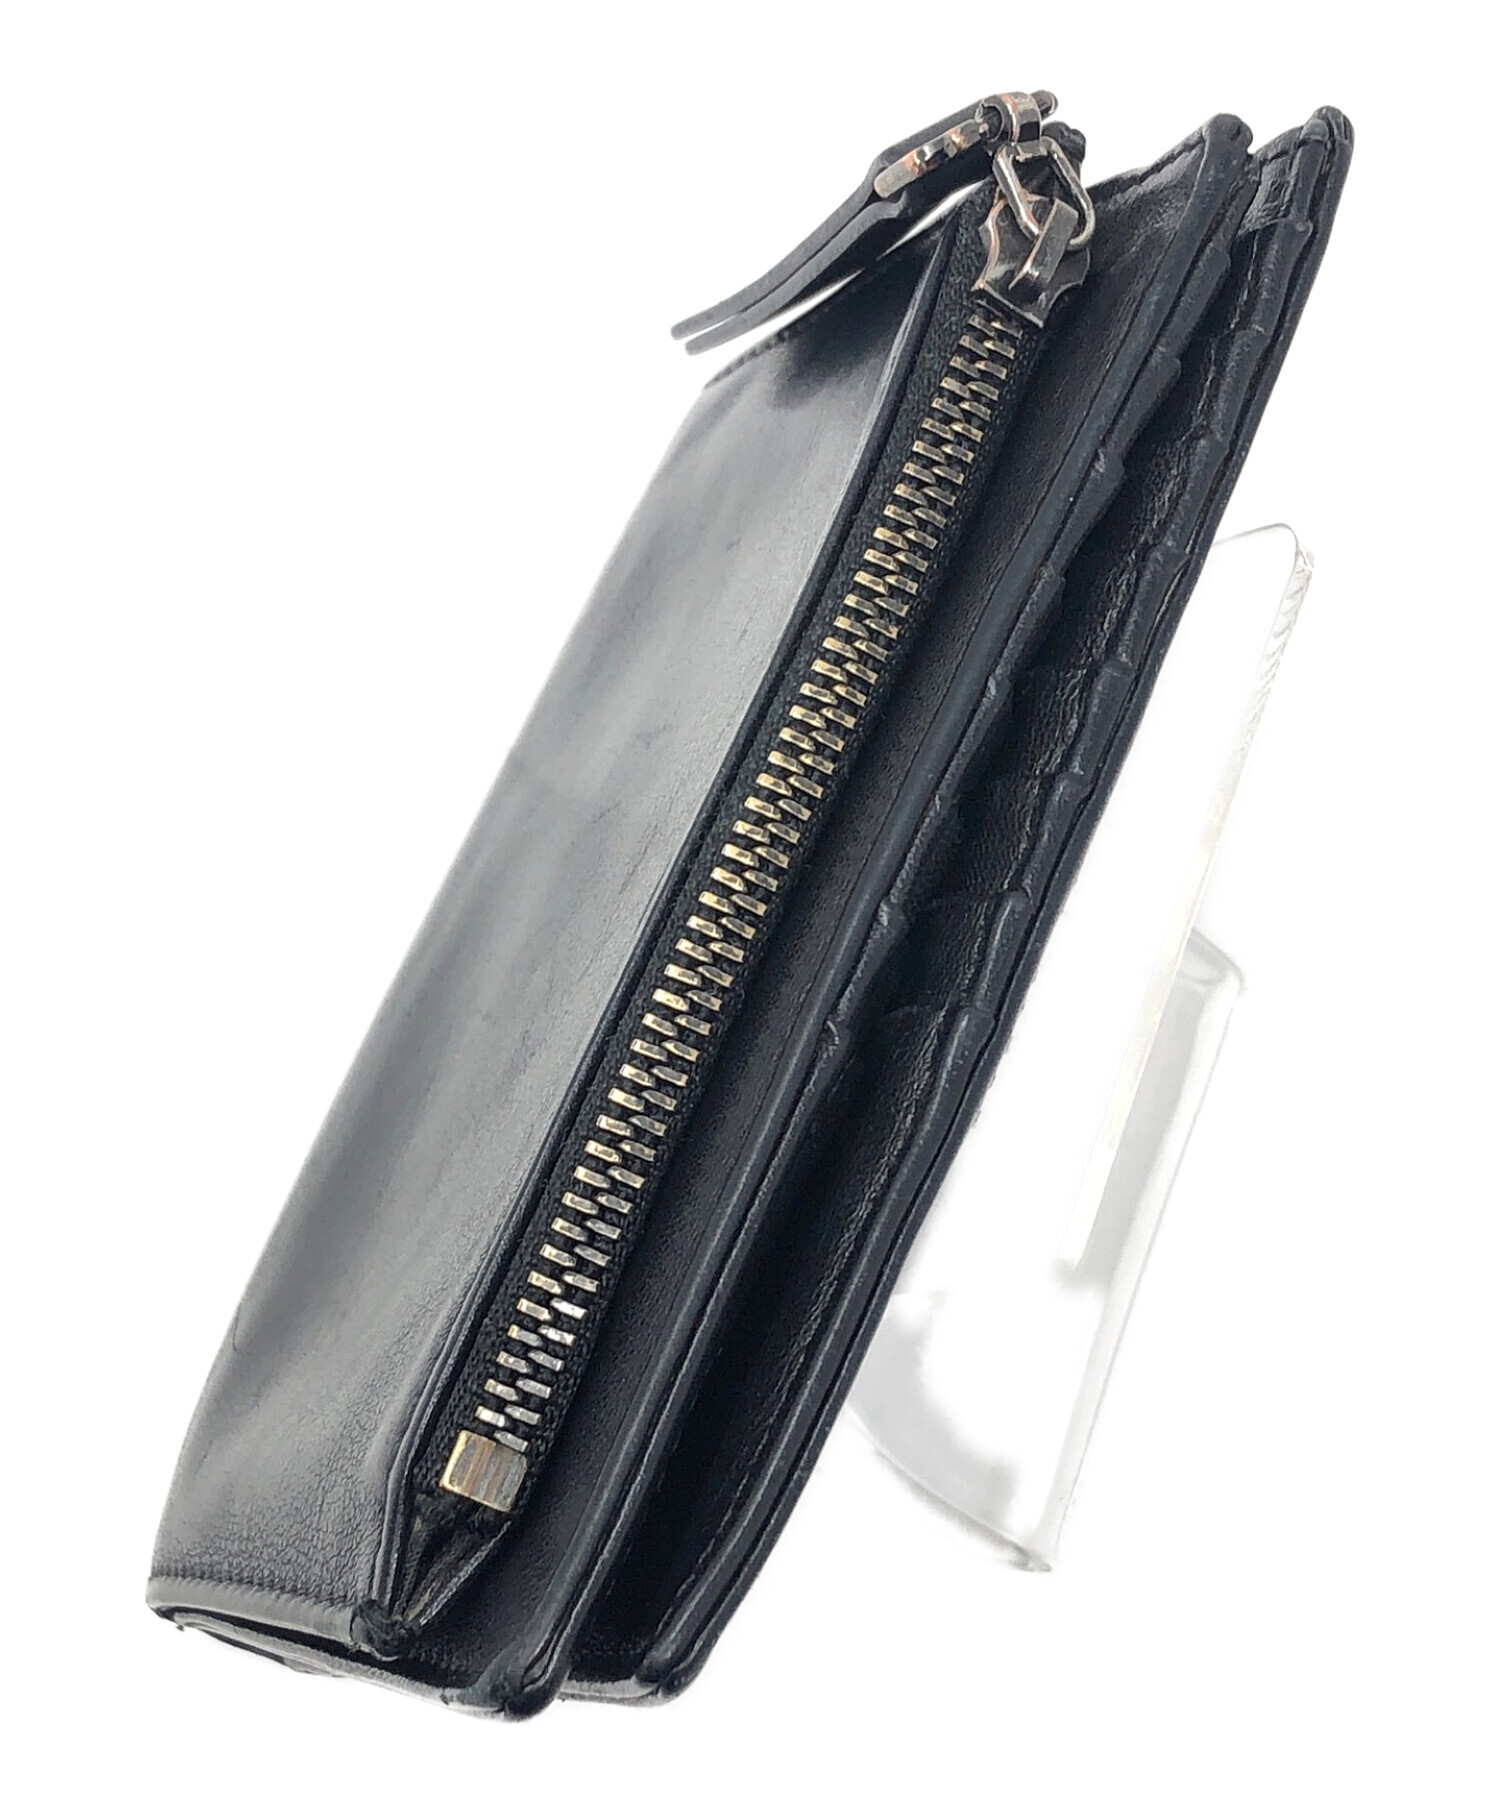 Martin Margiela11 (マルタンマルジェラ11) 2つ折り財布 ブラック サイズ:実寸サイズにてご確認ください。